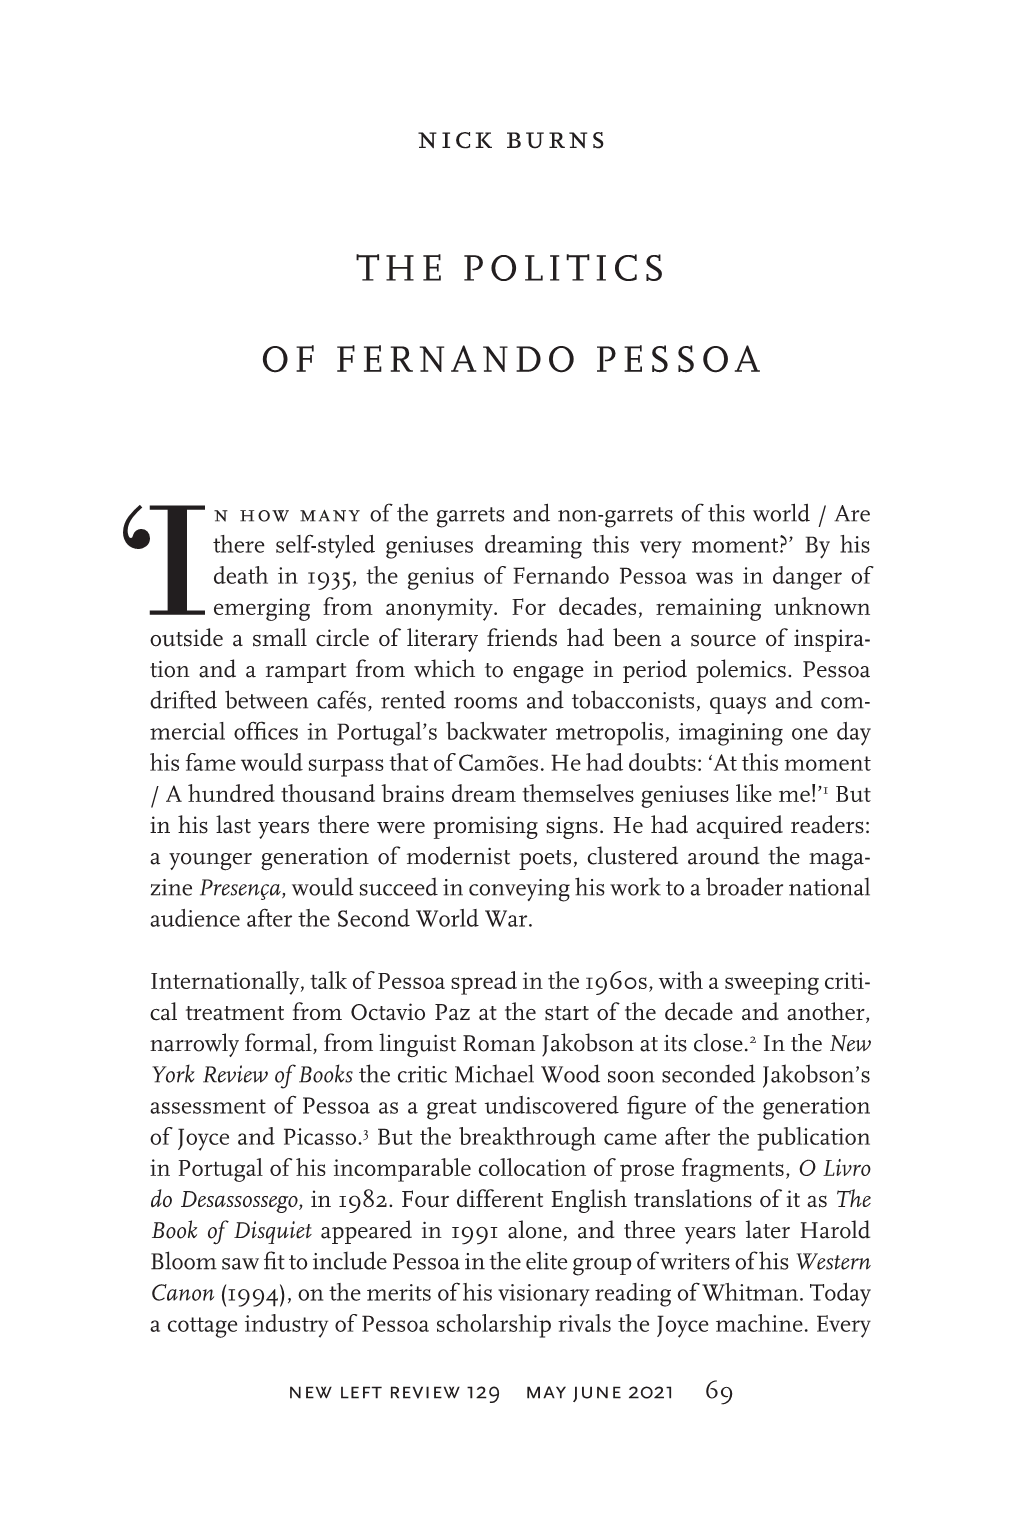 The Politics of Fernando Pessoa